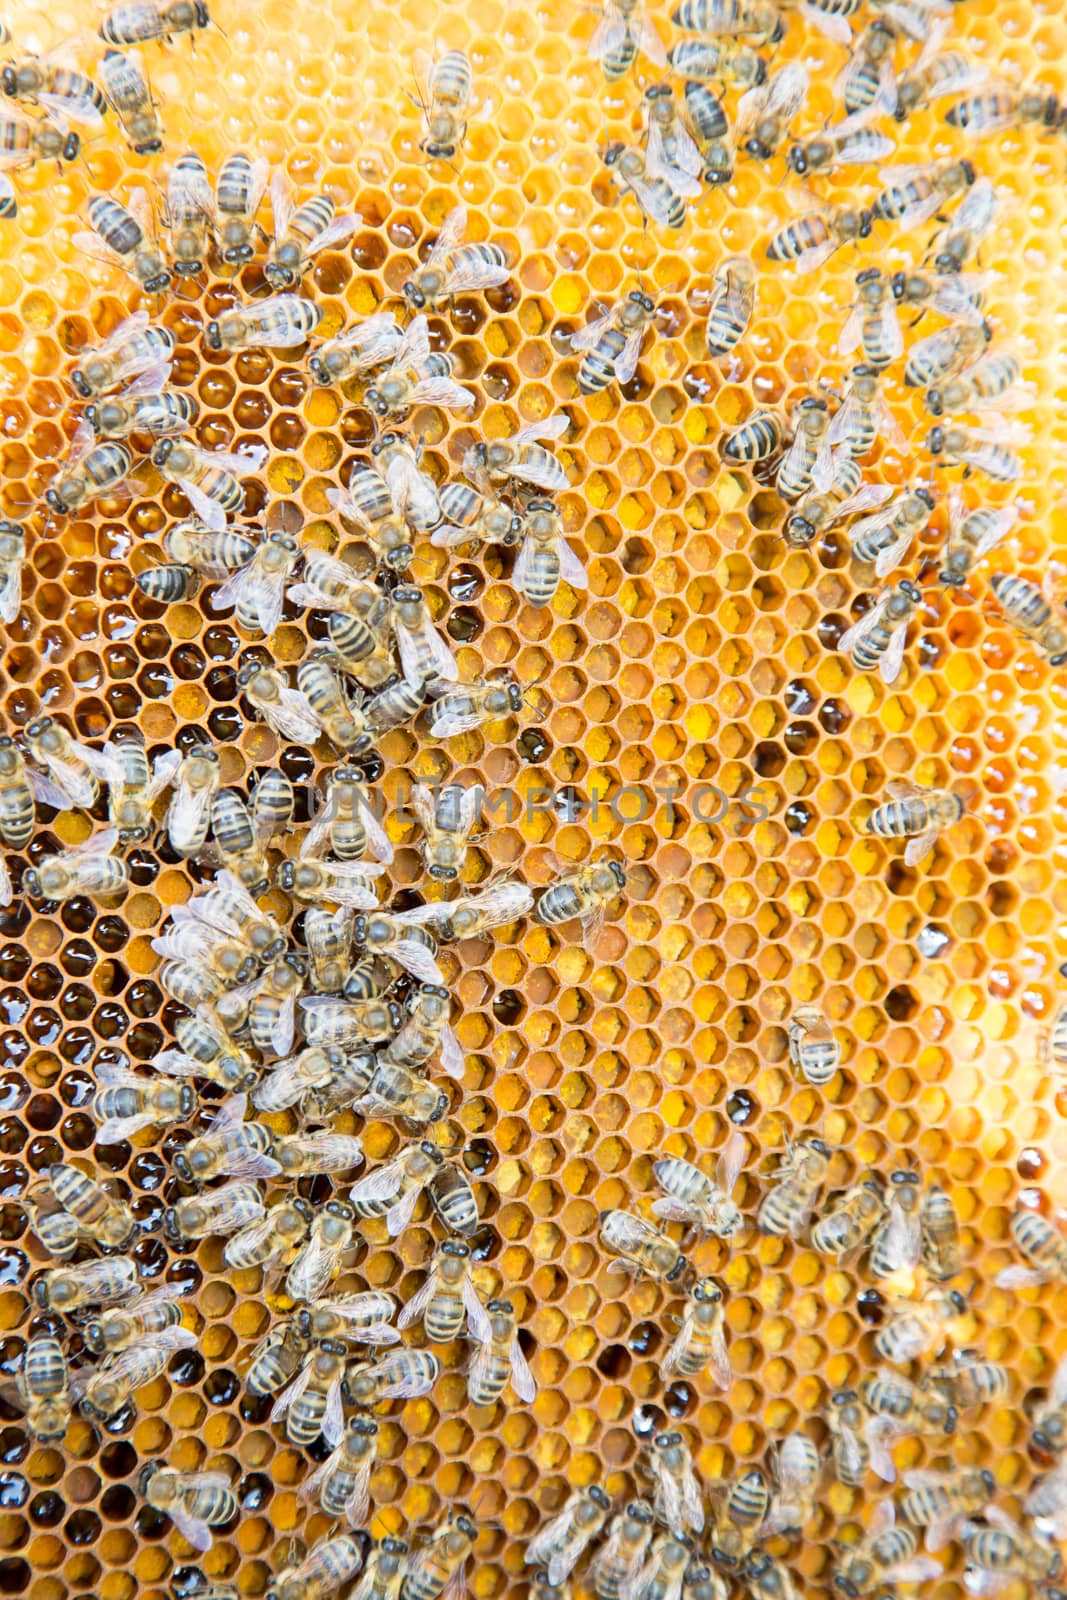 Bees on honeycomb in a beehive by ikonoklast_fotografie